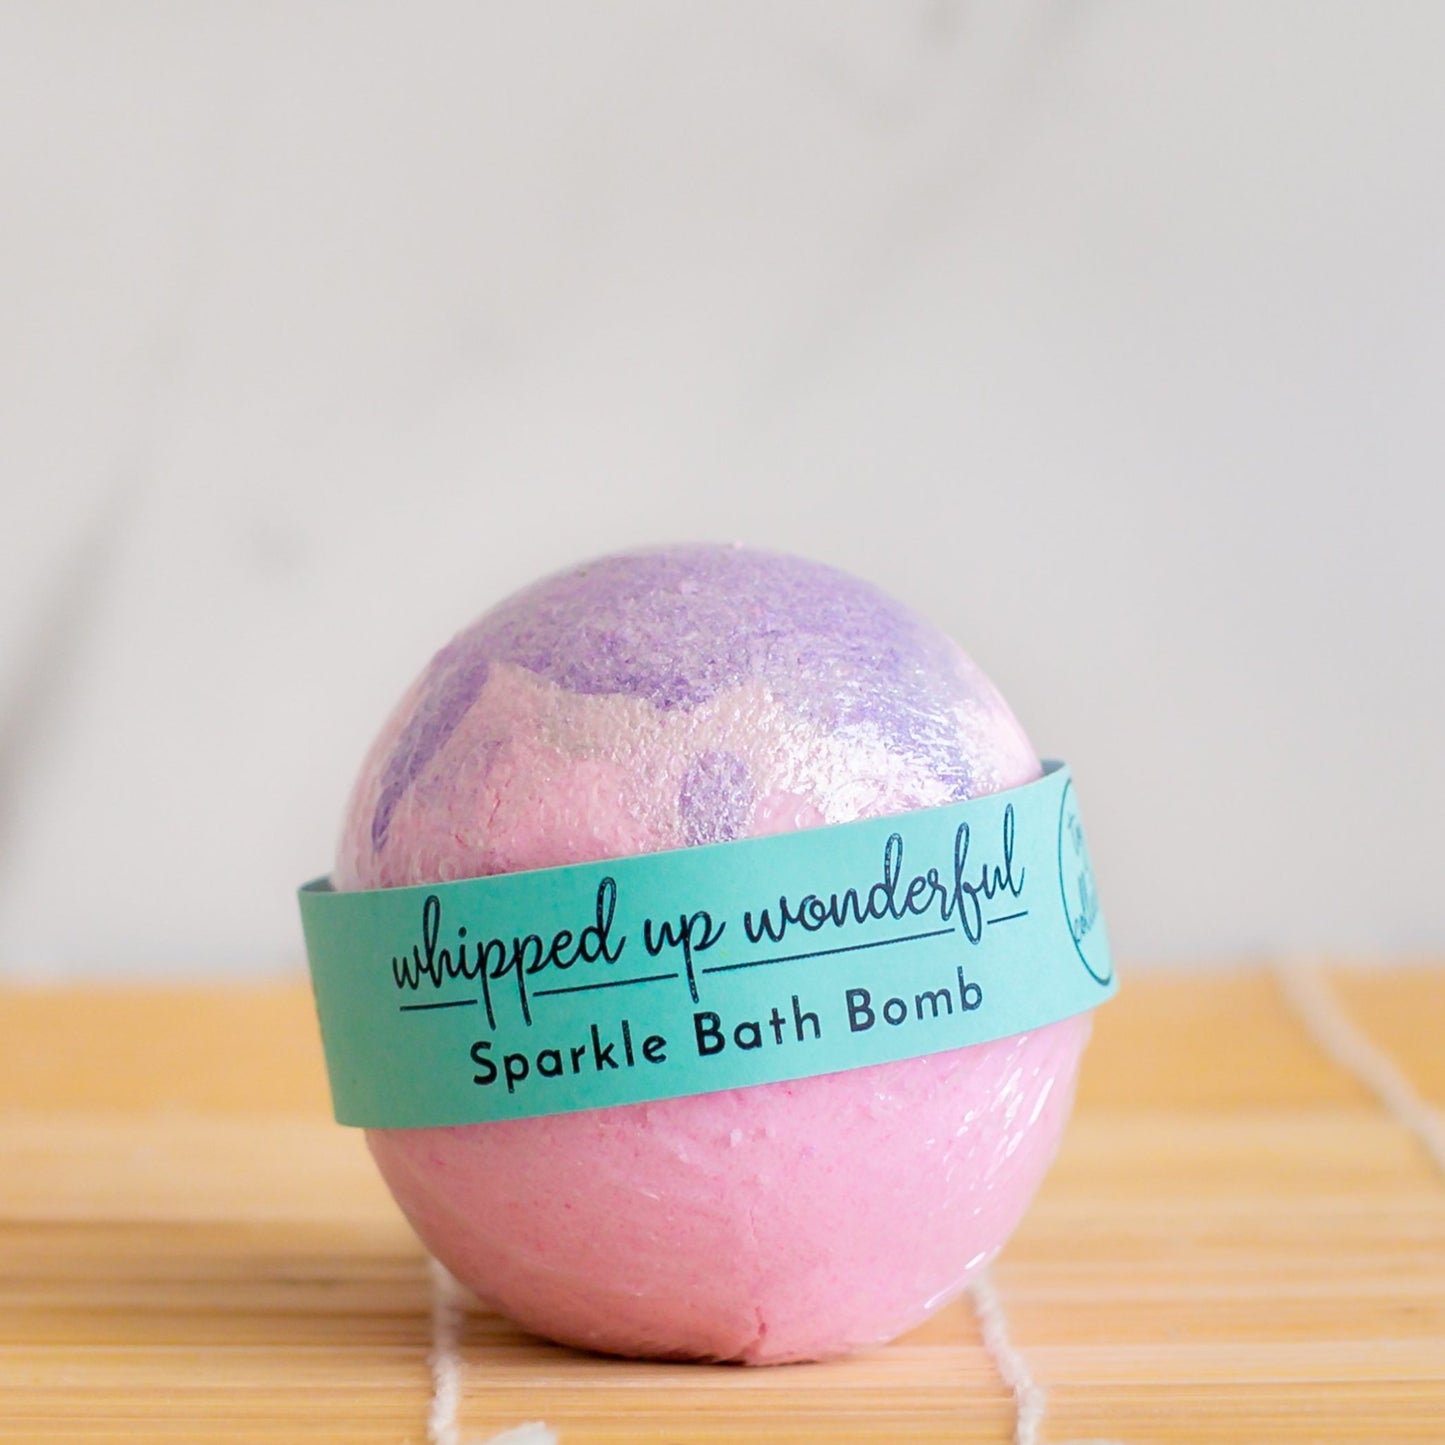 Sparkle bath Bomb - Whipped Up Wonderful